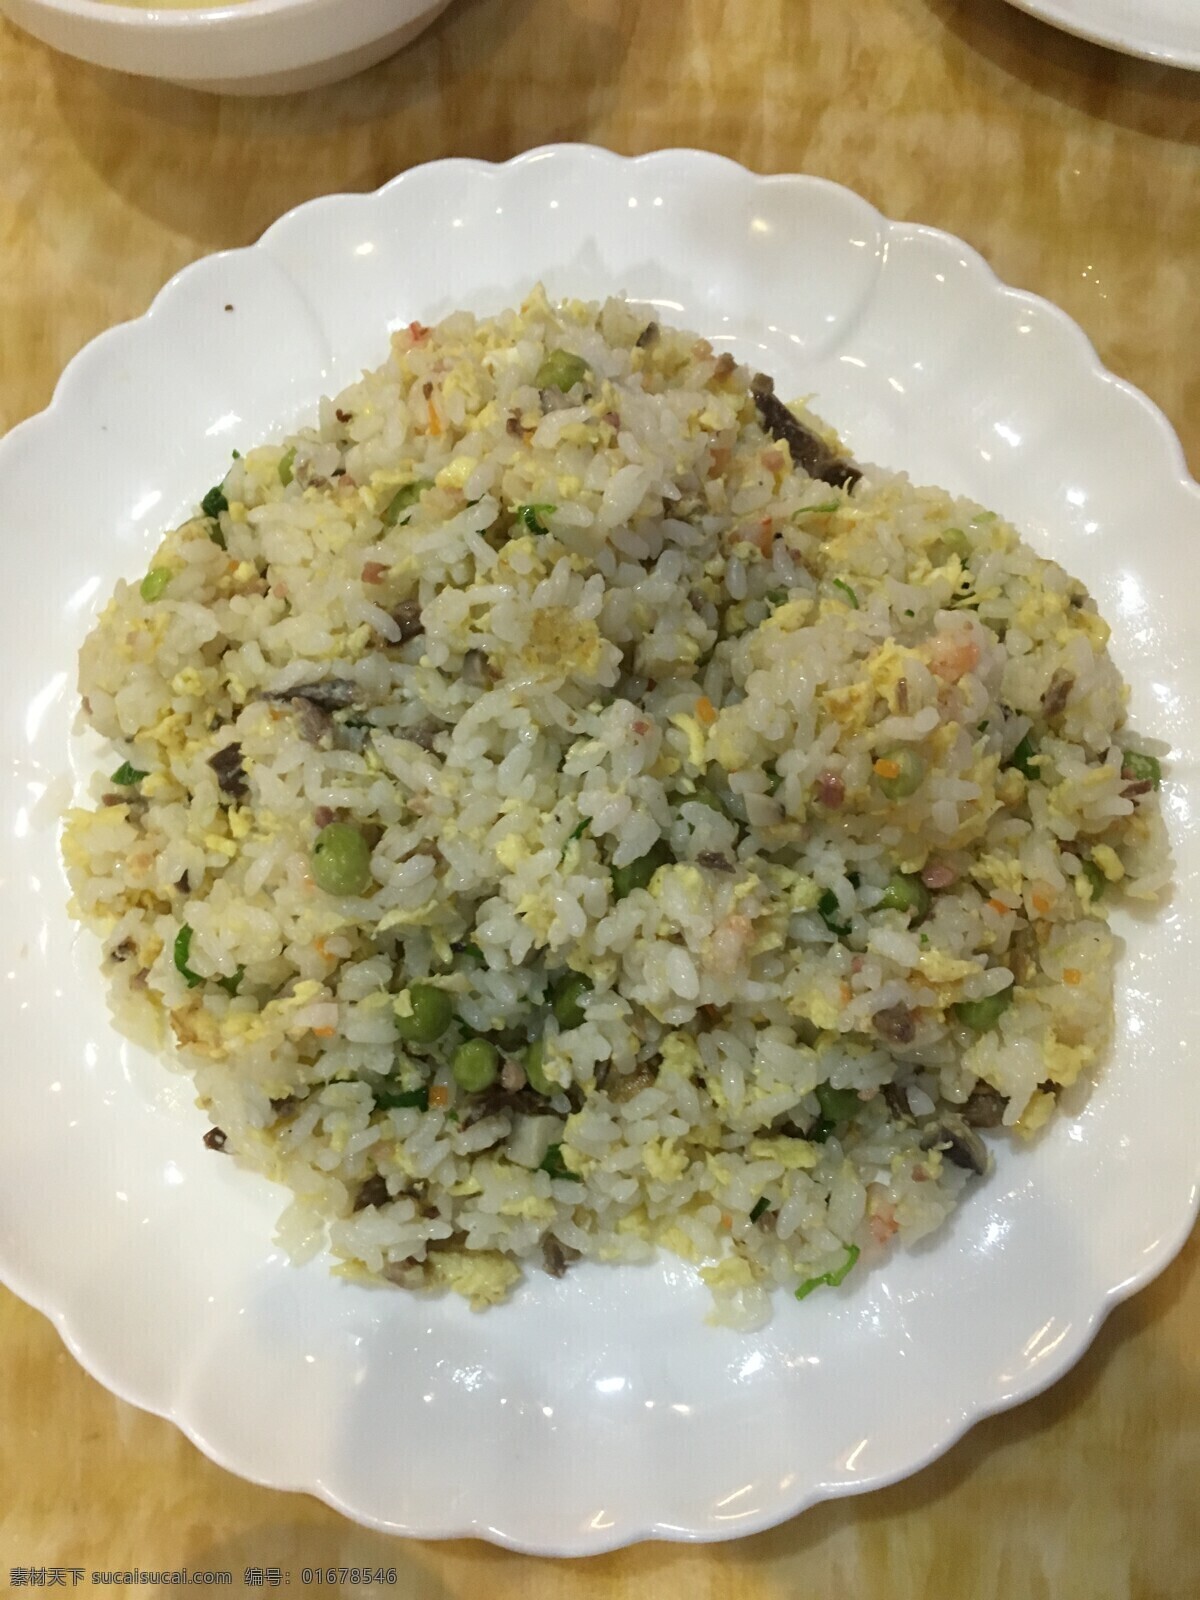 蛋炒饭 主食 中餐 中式 美食 白米饭 蛋 豆子 餐饮美食 传统美食